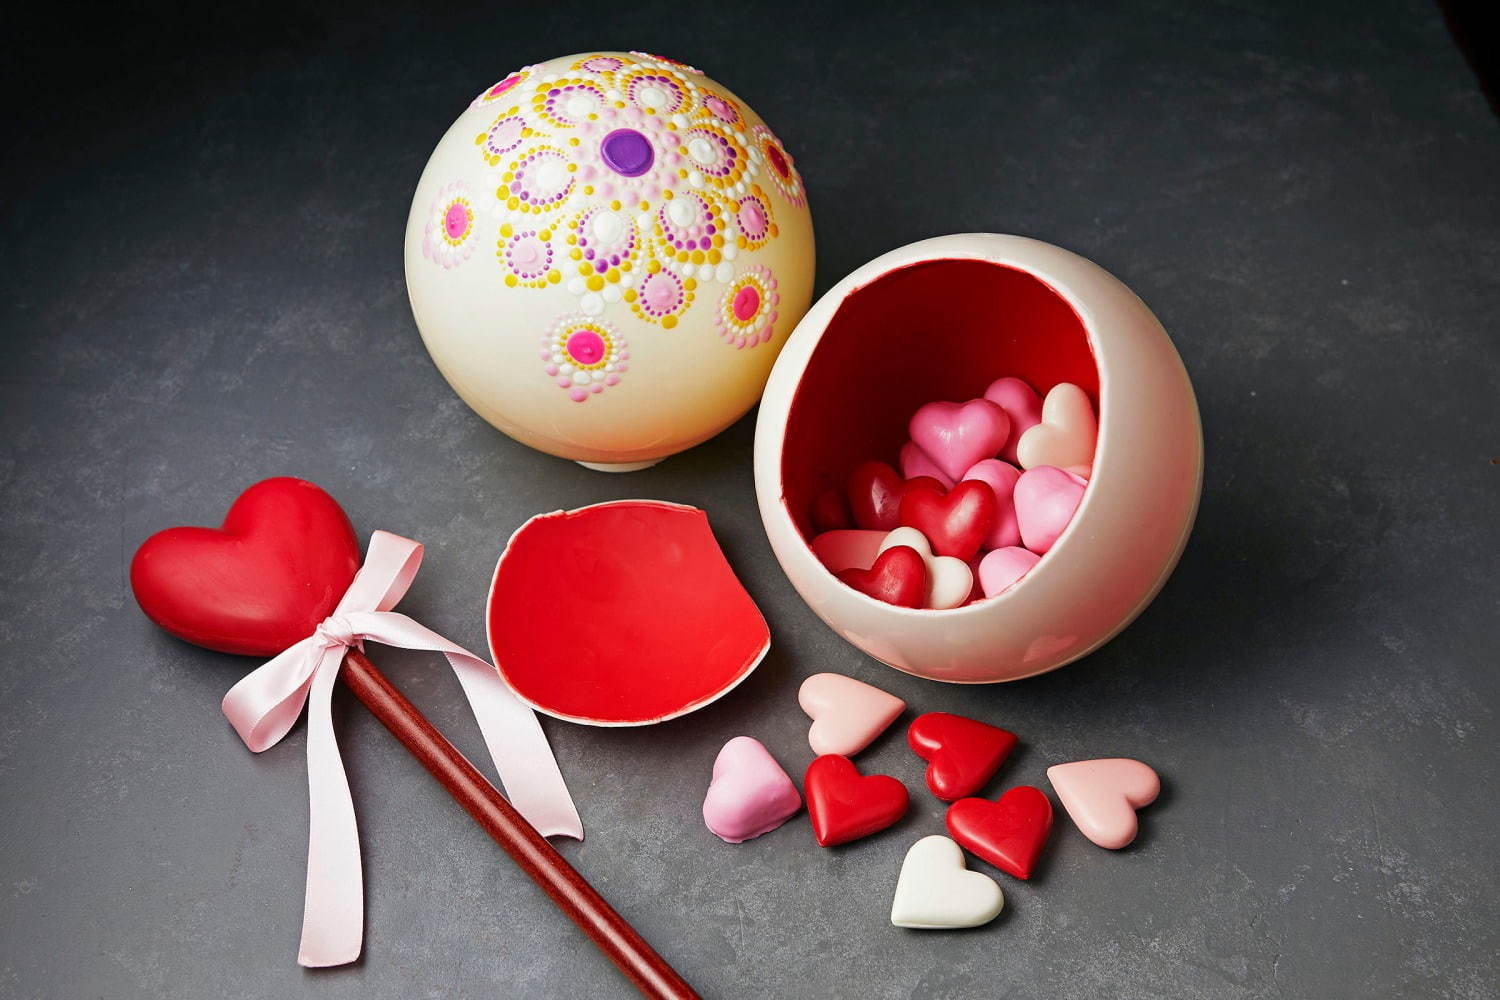 ザ リッツ カールトン大阪のバレンタイン ステッキで割る球体チョコや本型チョコボックスなど ファッションプレス